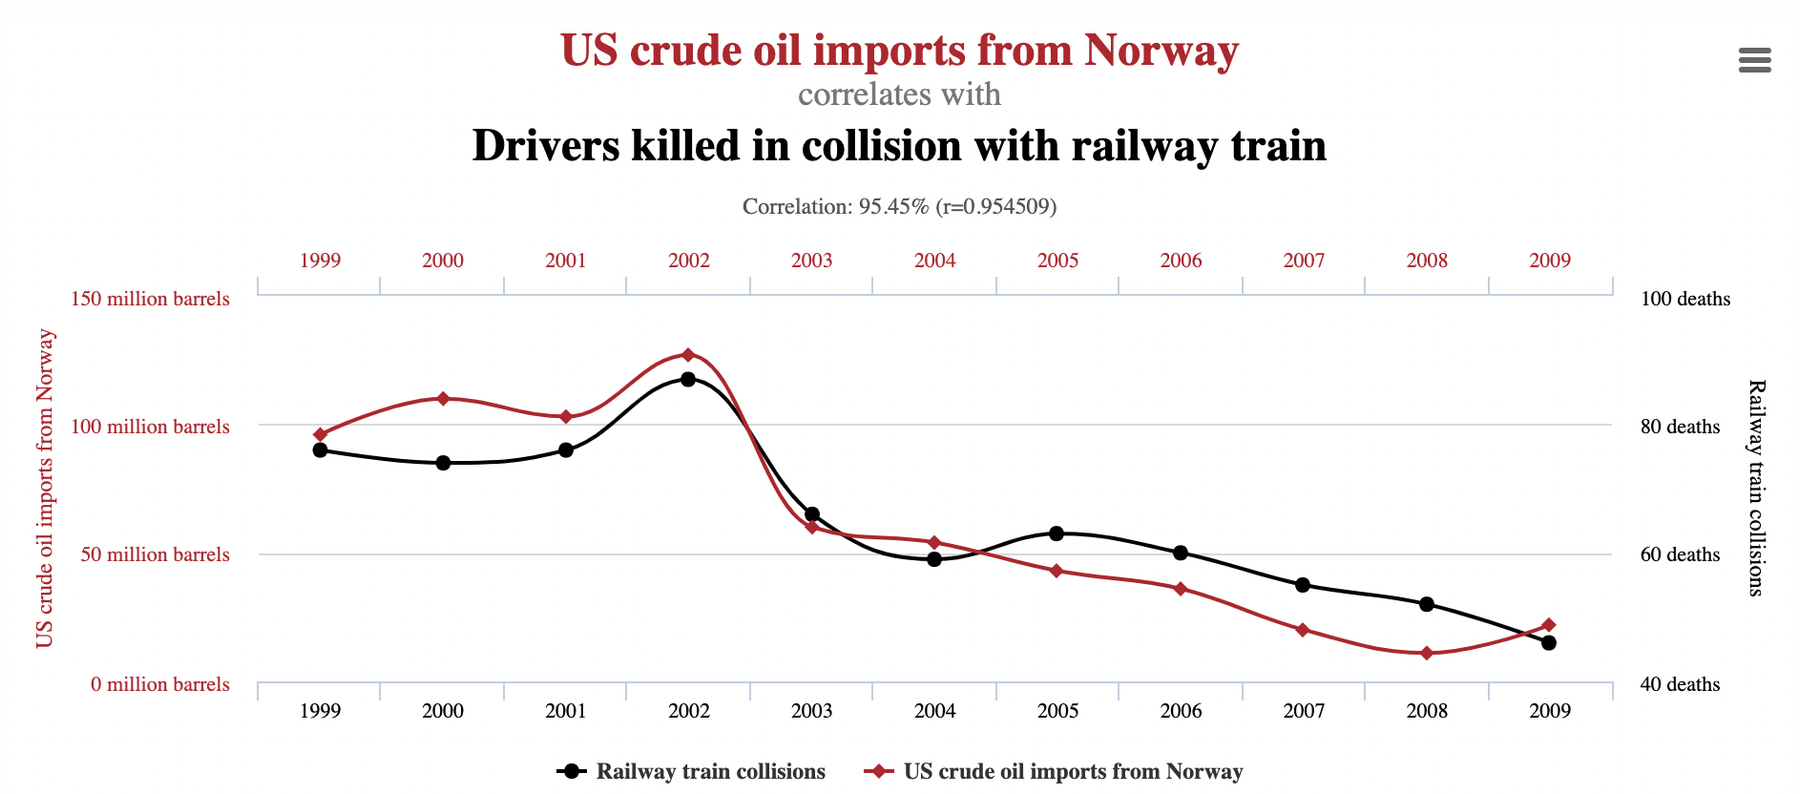 При желании, можно найти закономерности между любыми числовыми рядами: объемом импортируемой США нефти из Норвегии и количеством водителей погибших под поездами